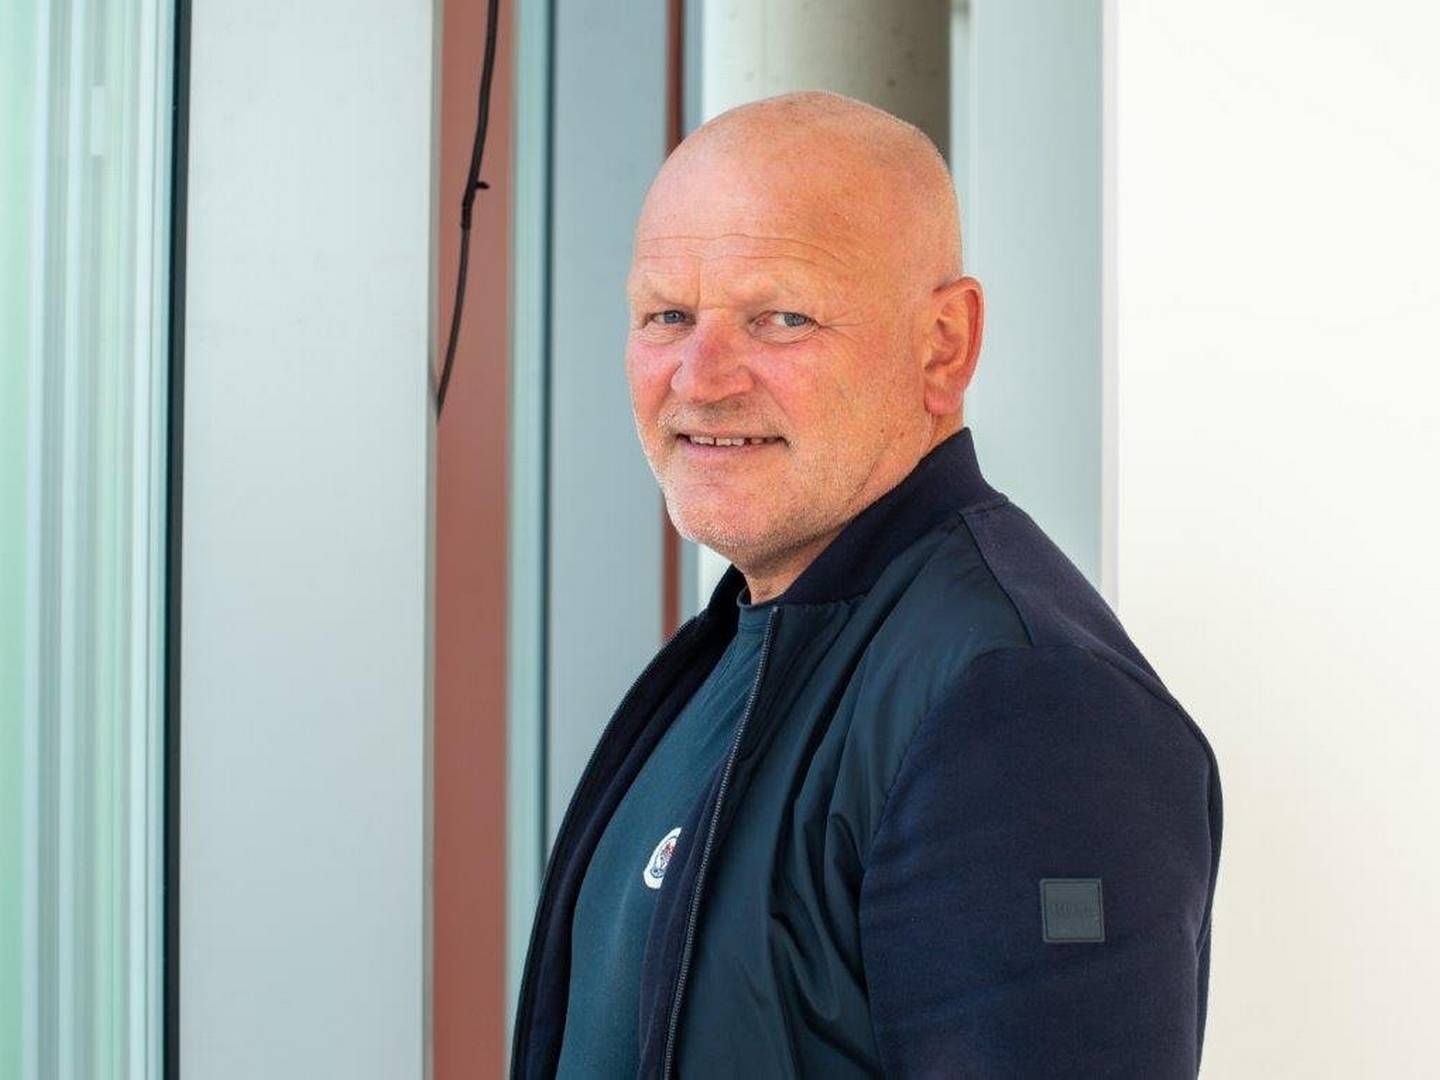 HAR MANGE JERN I ILDEN: Njål Østerhus er styreleder i forballklubben Sandnes Ulf, i tillegg til å være en av de største boligbyggerne i regionen. | Foto: Sandnes Ulf